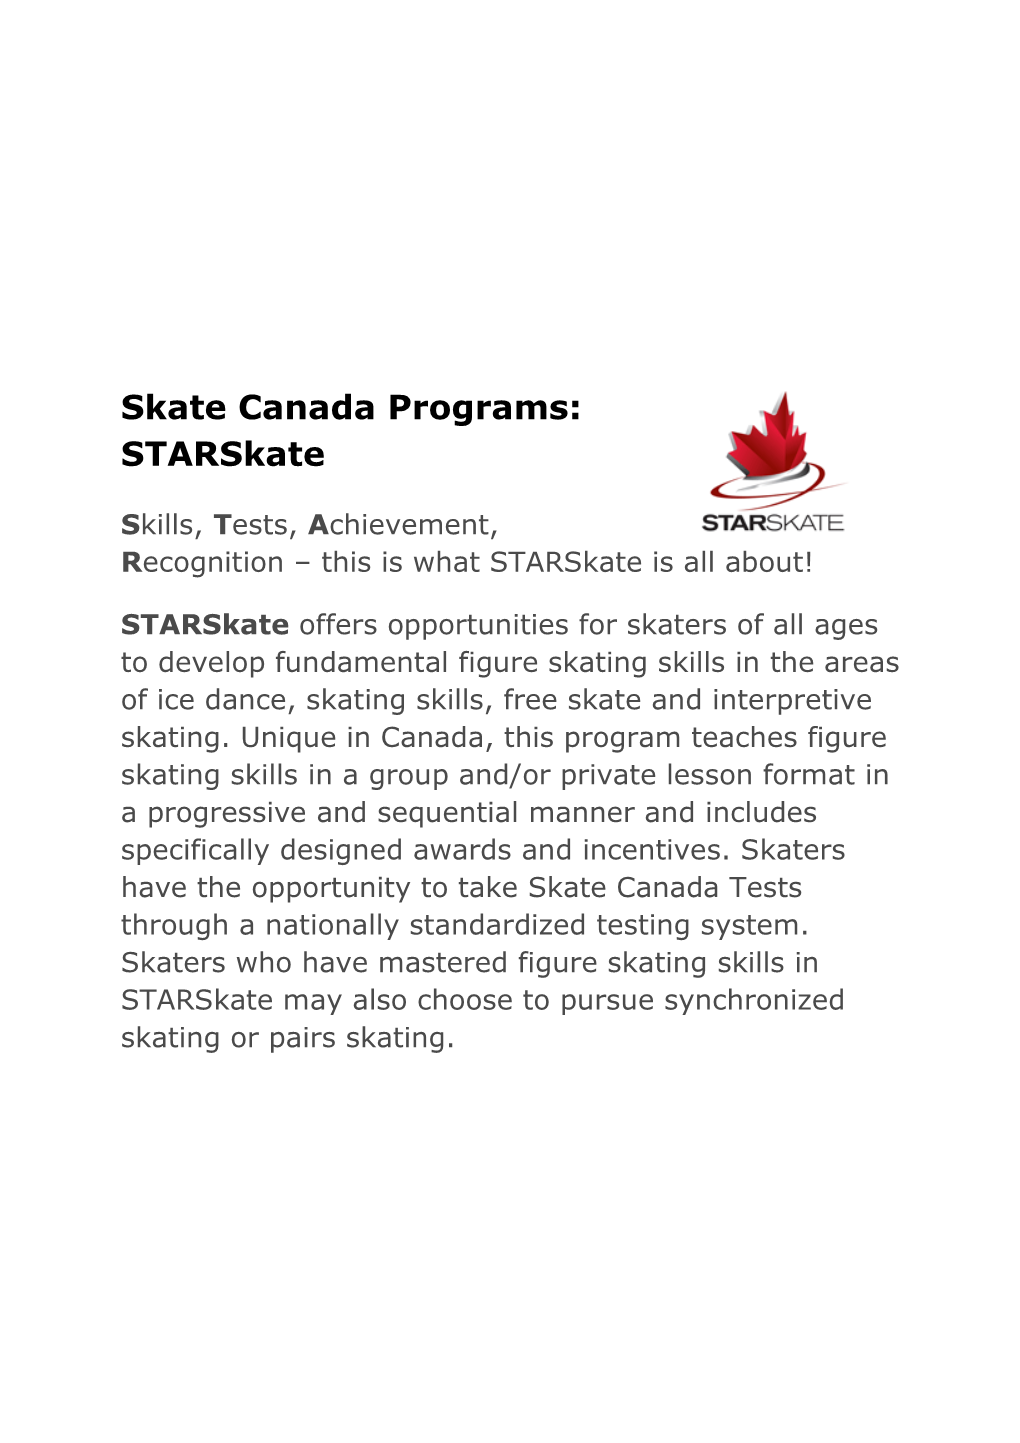 Skate Canada Programs: Starskate